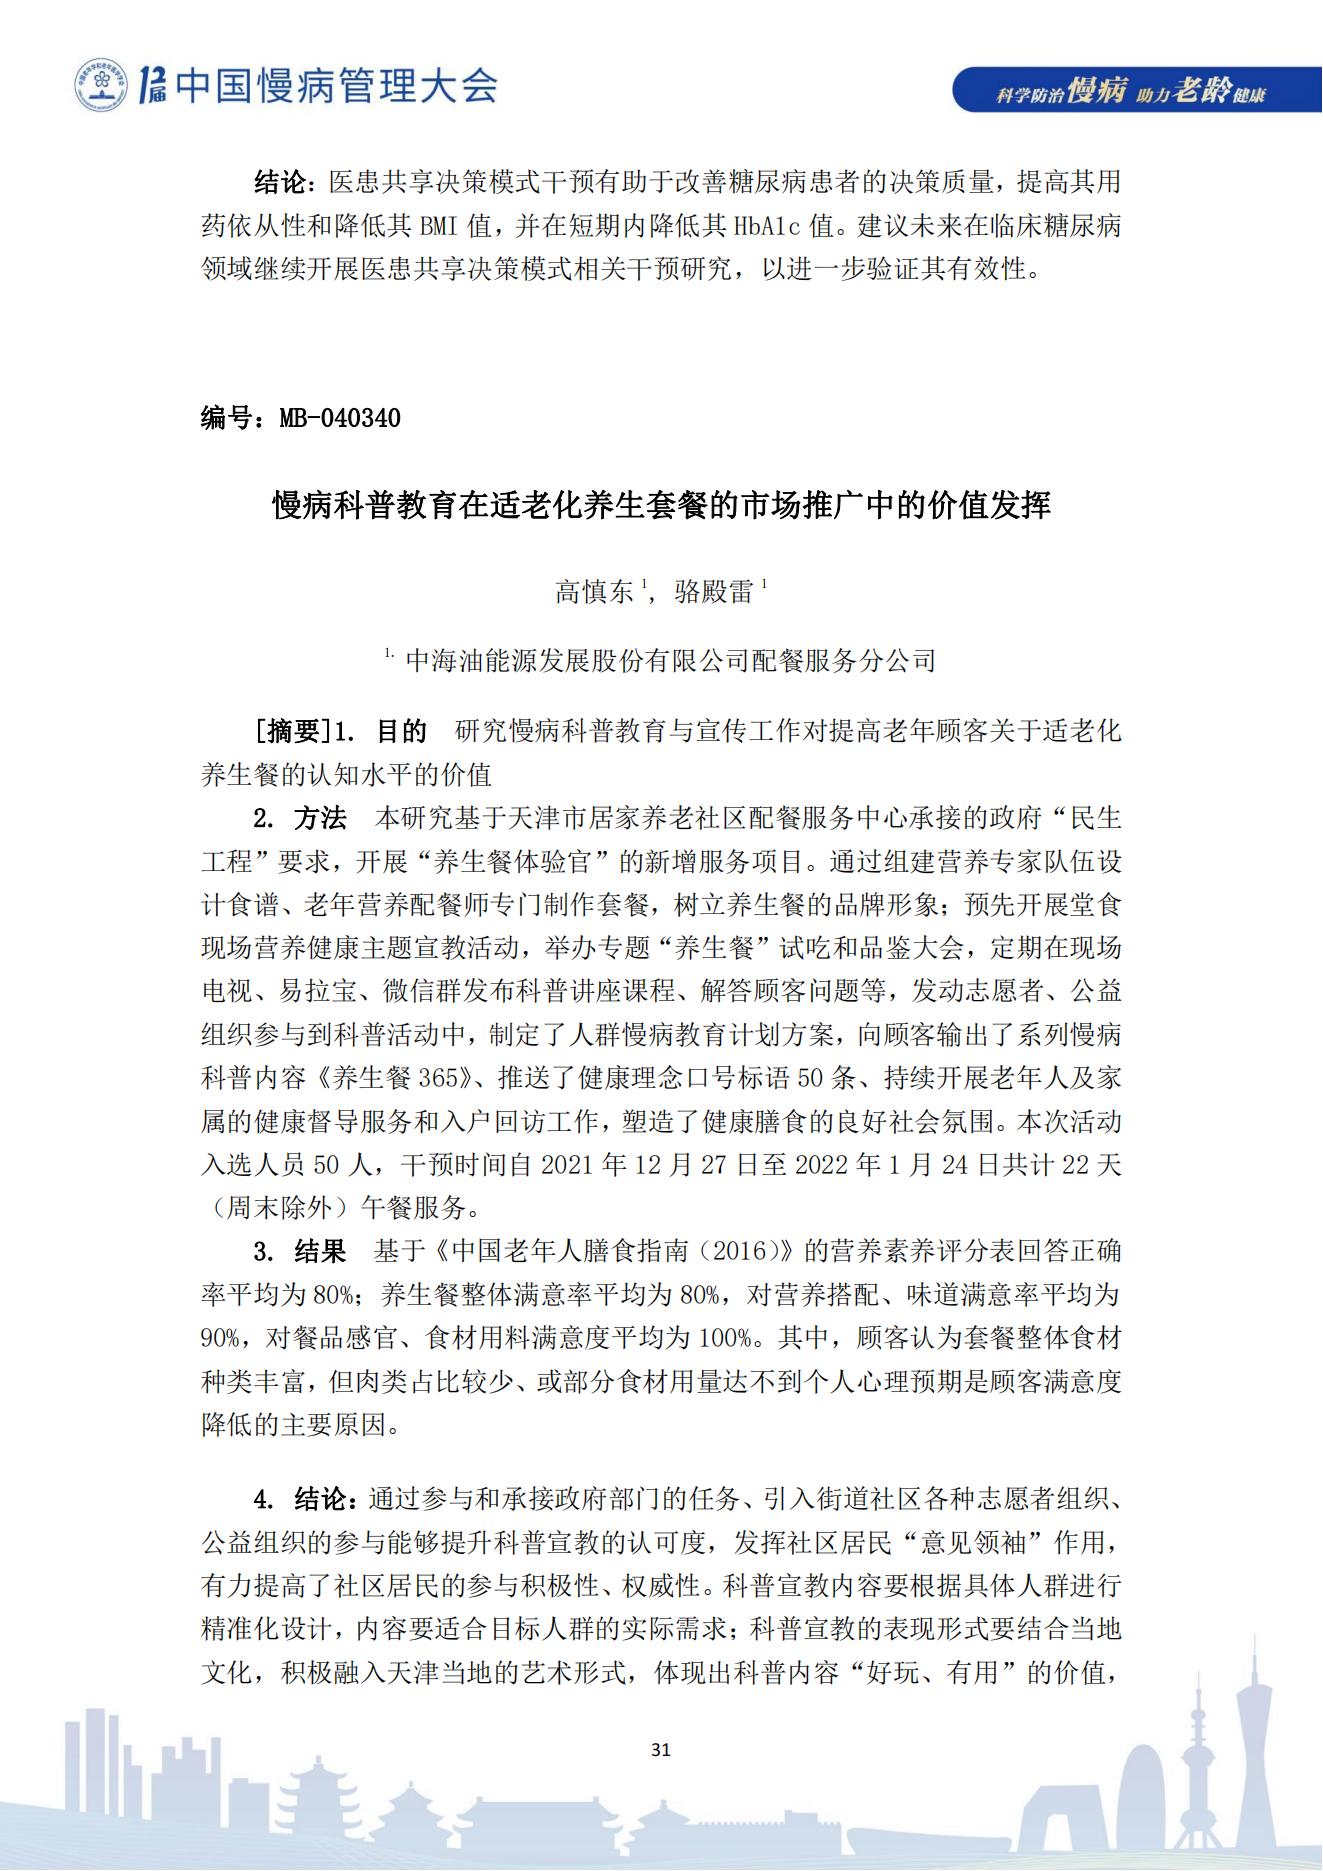 第十二届中国慢病管理大会获奖论文（电子版）0823_31.jpg